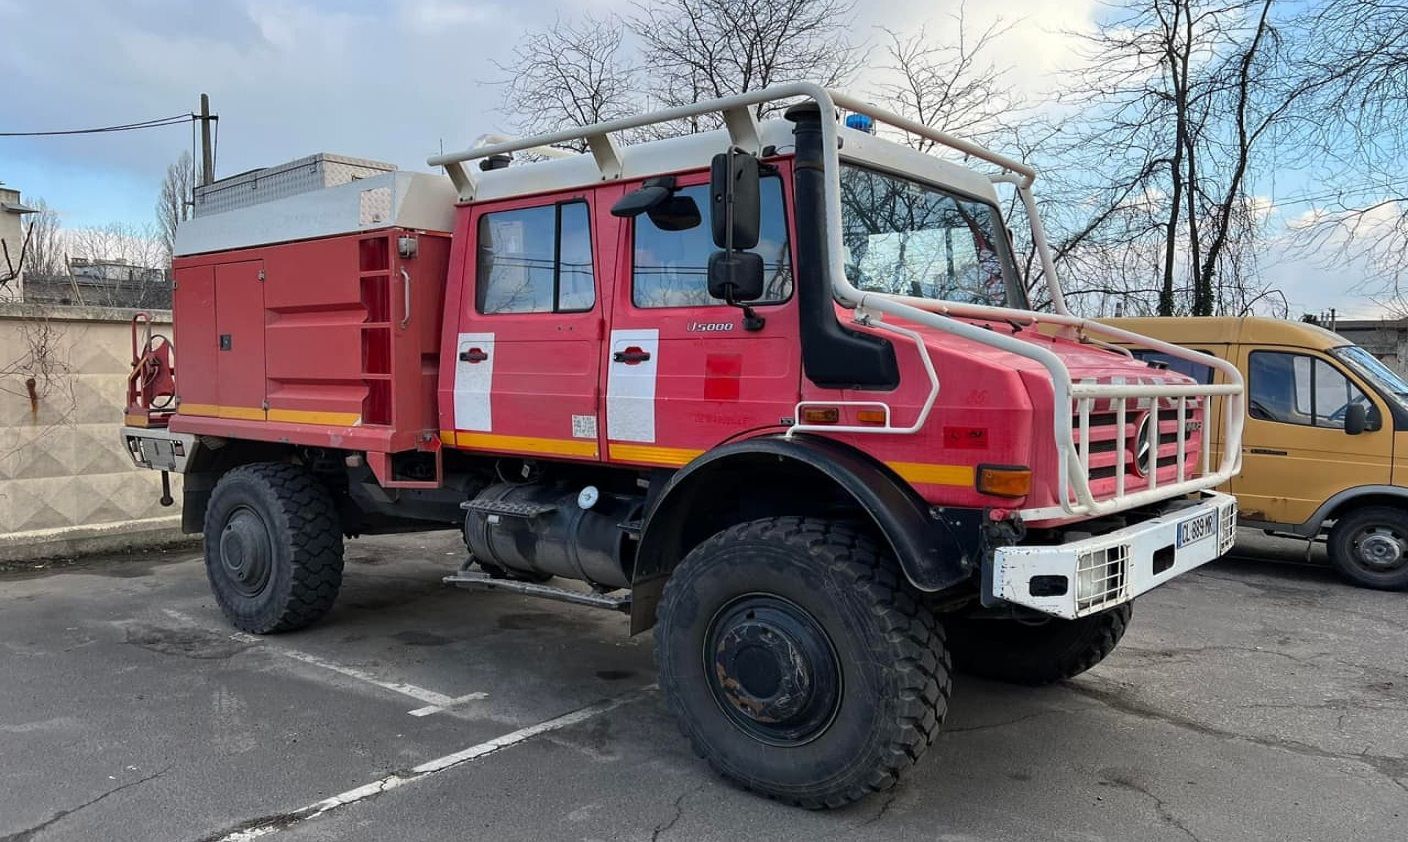 Одесса получила от Марселя пожарную машину Mercedes Unimog для тушения огня в сложных условиях